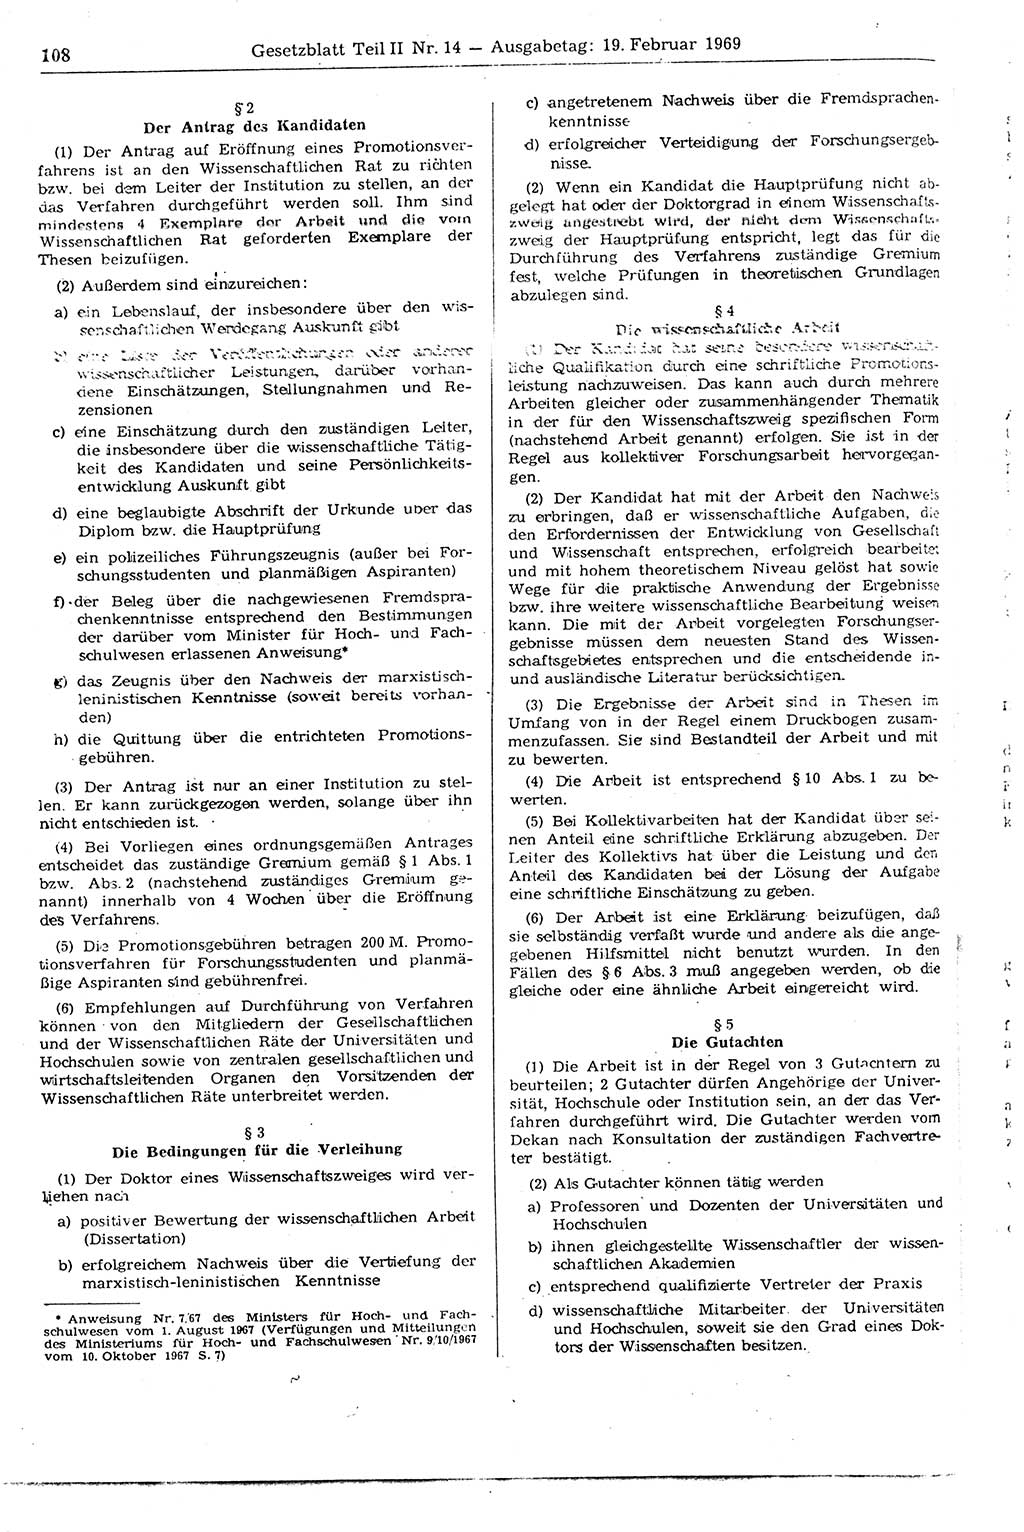 Gesetzblatt (GBl.) der Deutschen Demokratischen Republik (DDR) Teil ⅠⅠ 1969, Seite 108 (GBl. DDR ⅠⅠ 1969, S. 108)